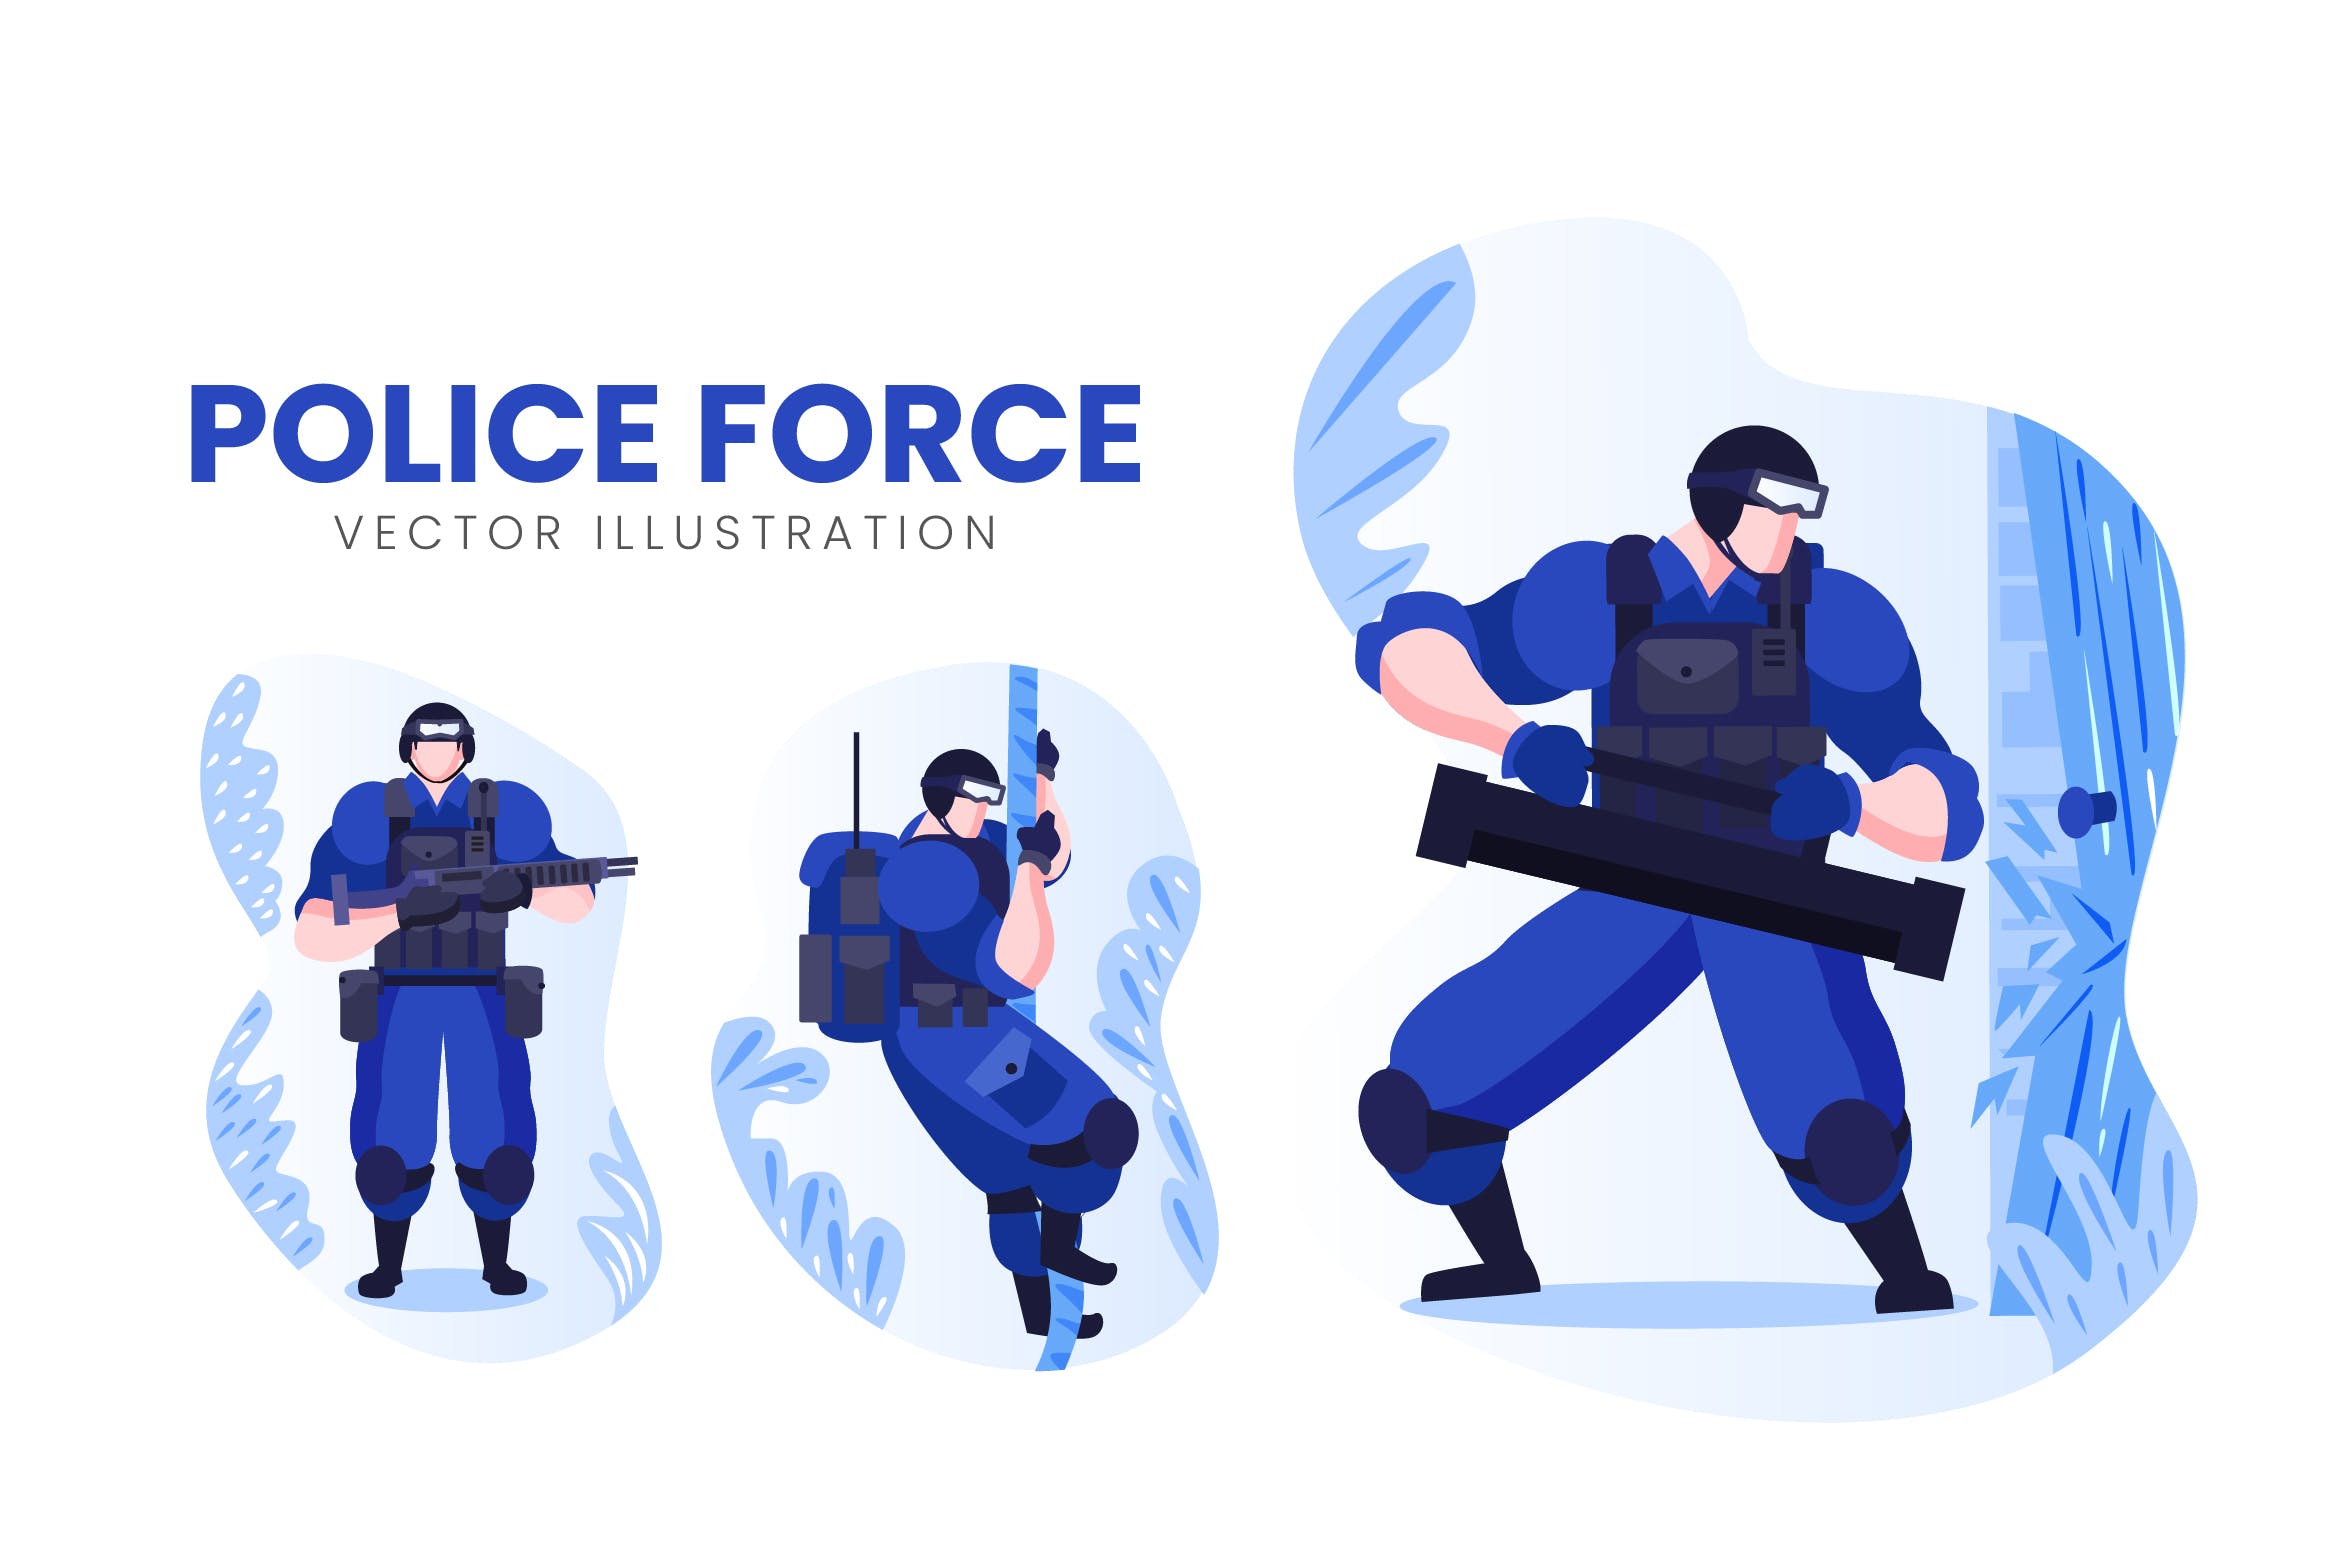 警察人物形象非凡图库精选手绘插画矢量素材 Police Force Vector Character Set插图